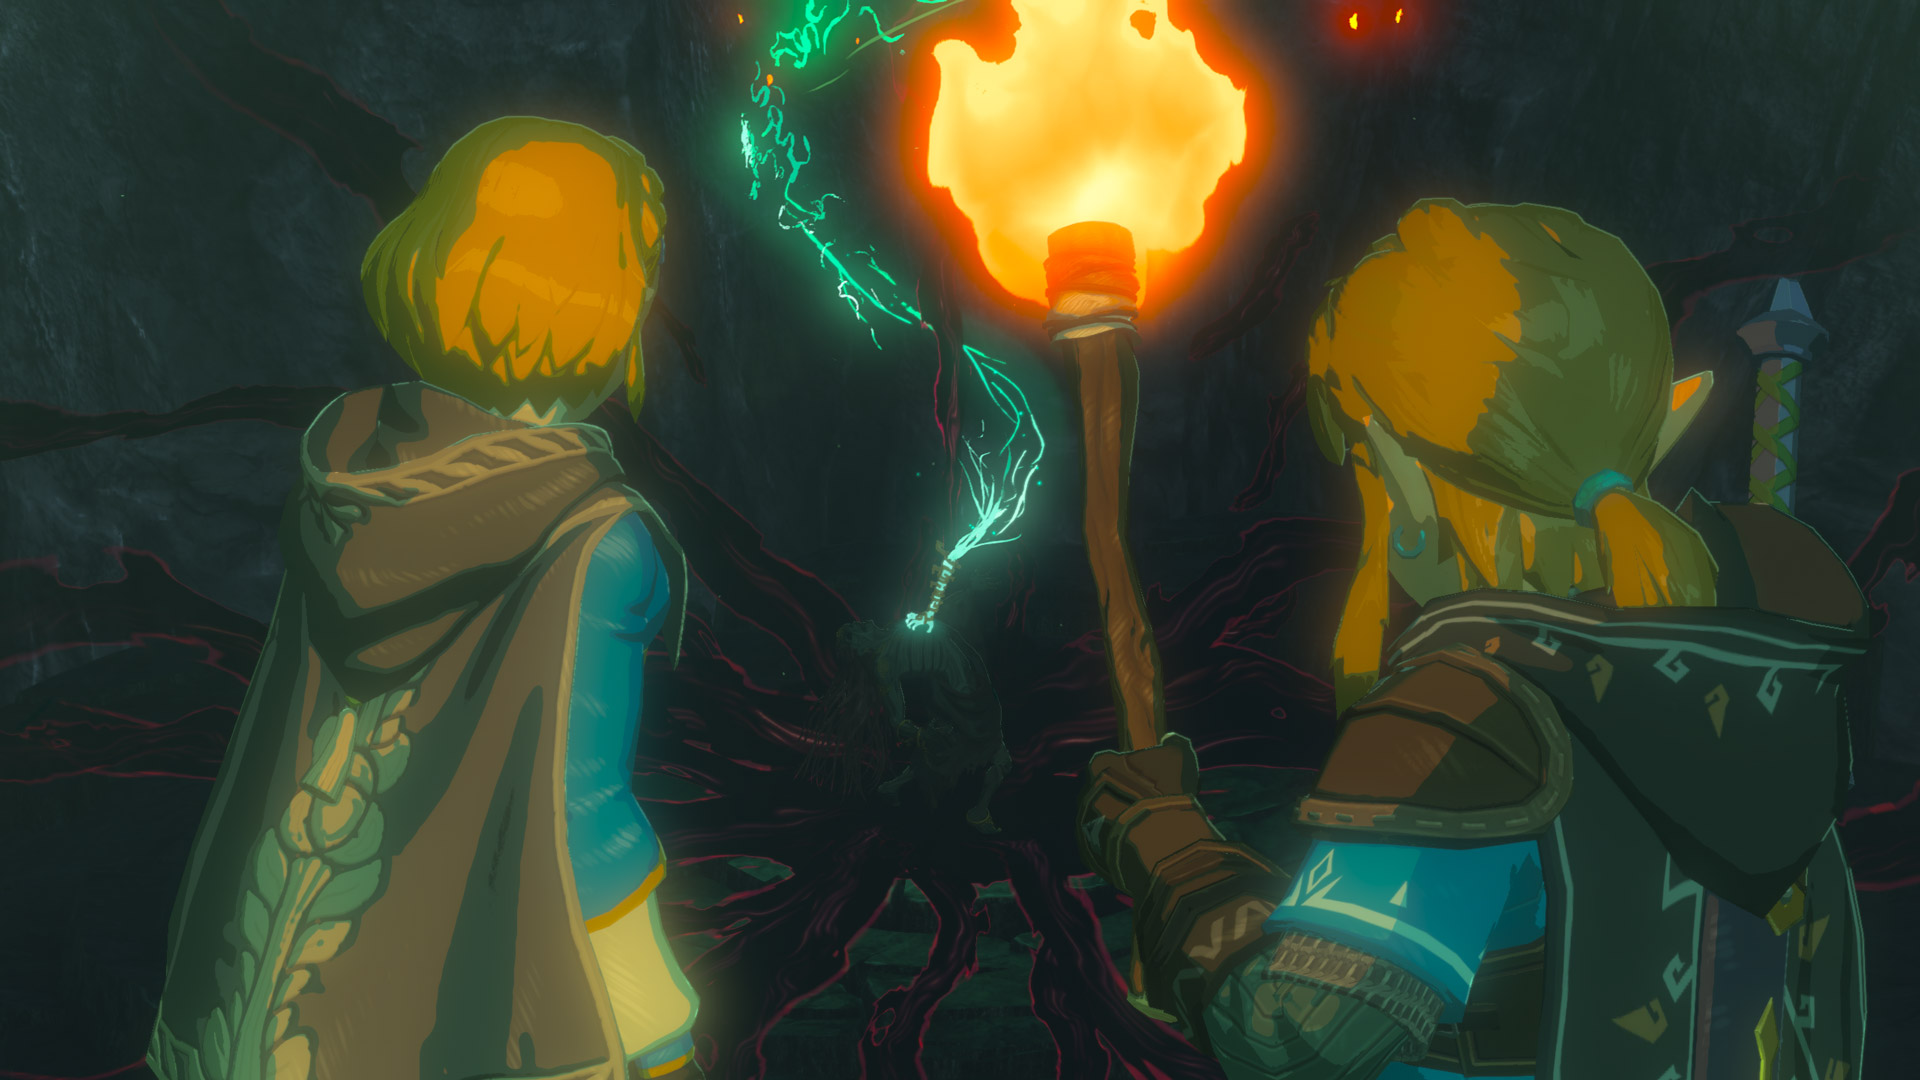 Link and Zelda holding a torch enter a dark passageway